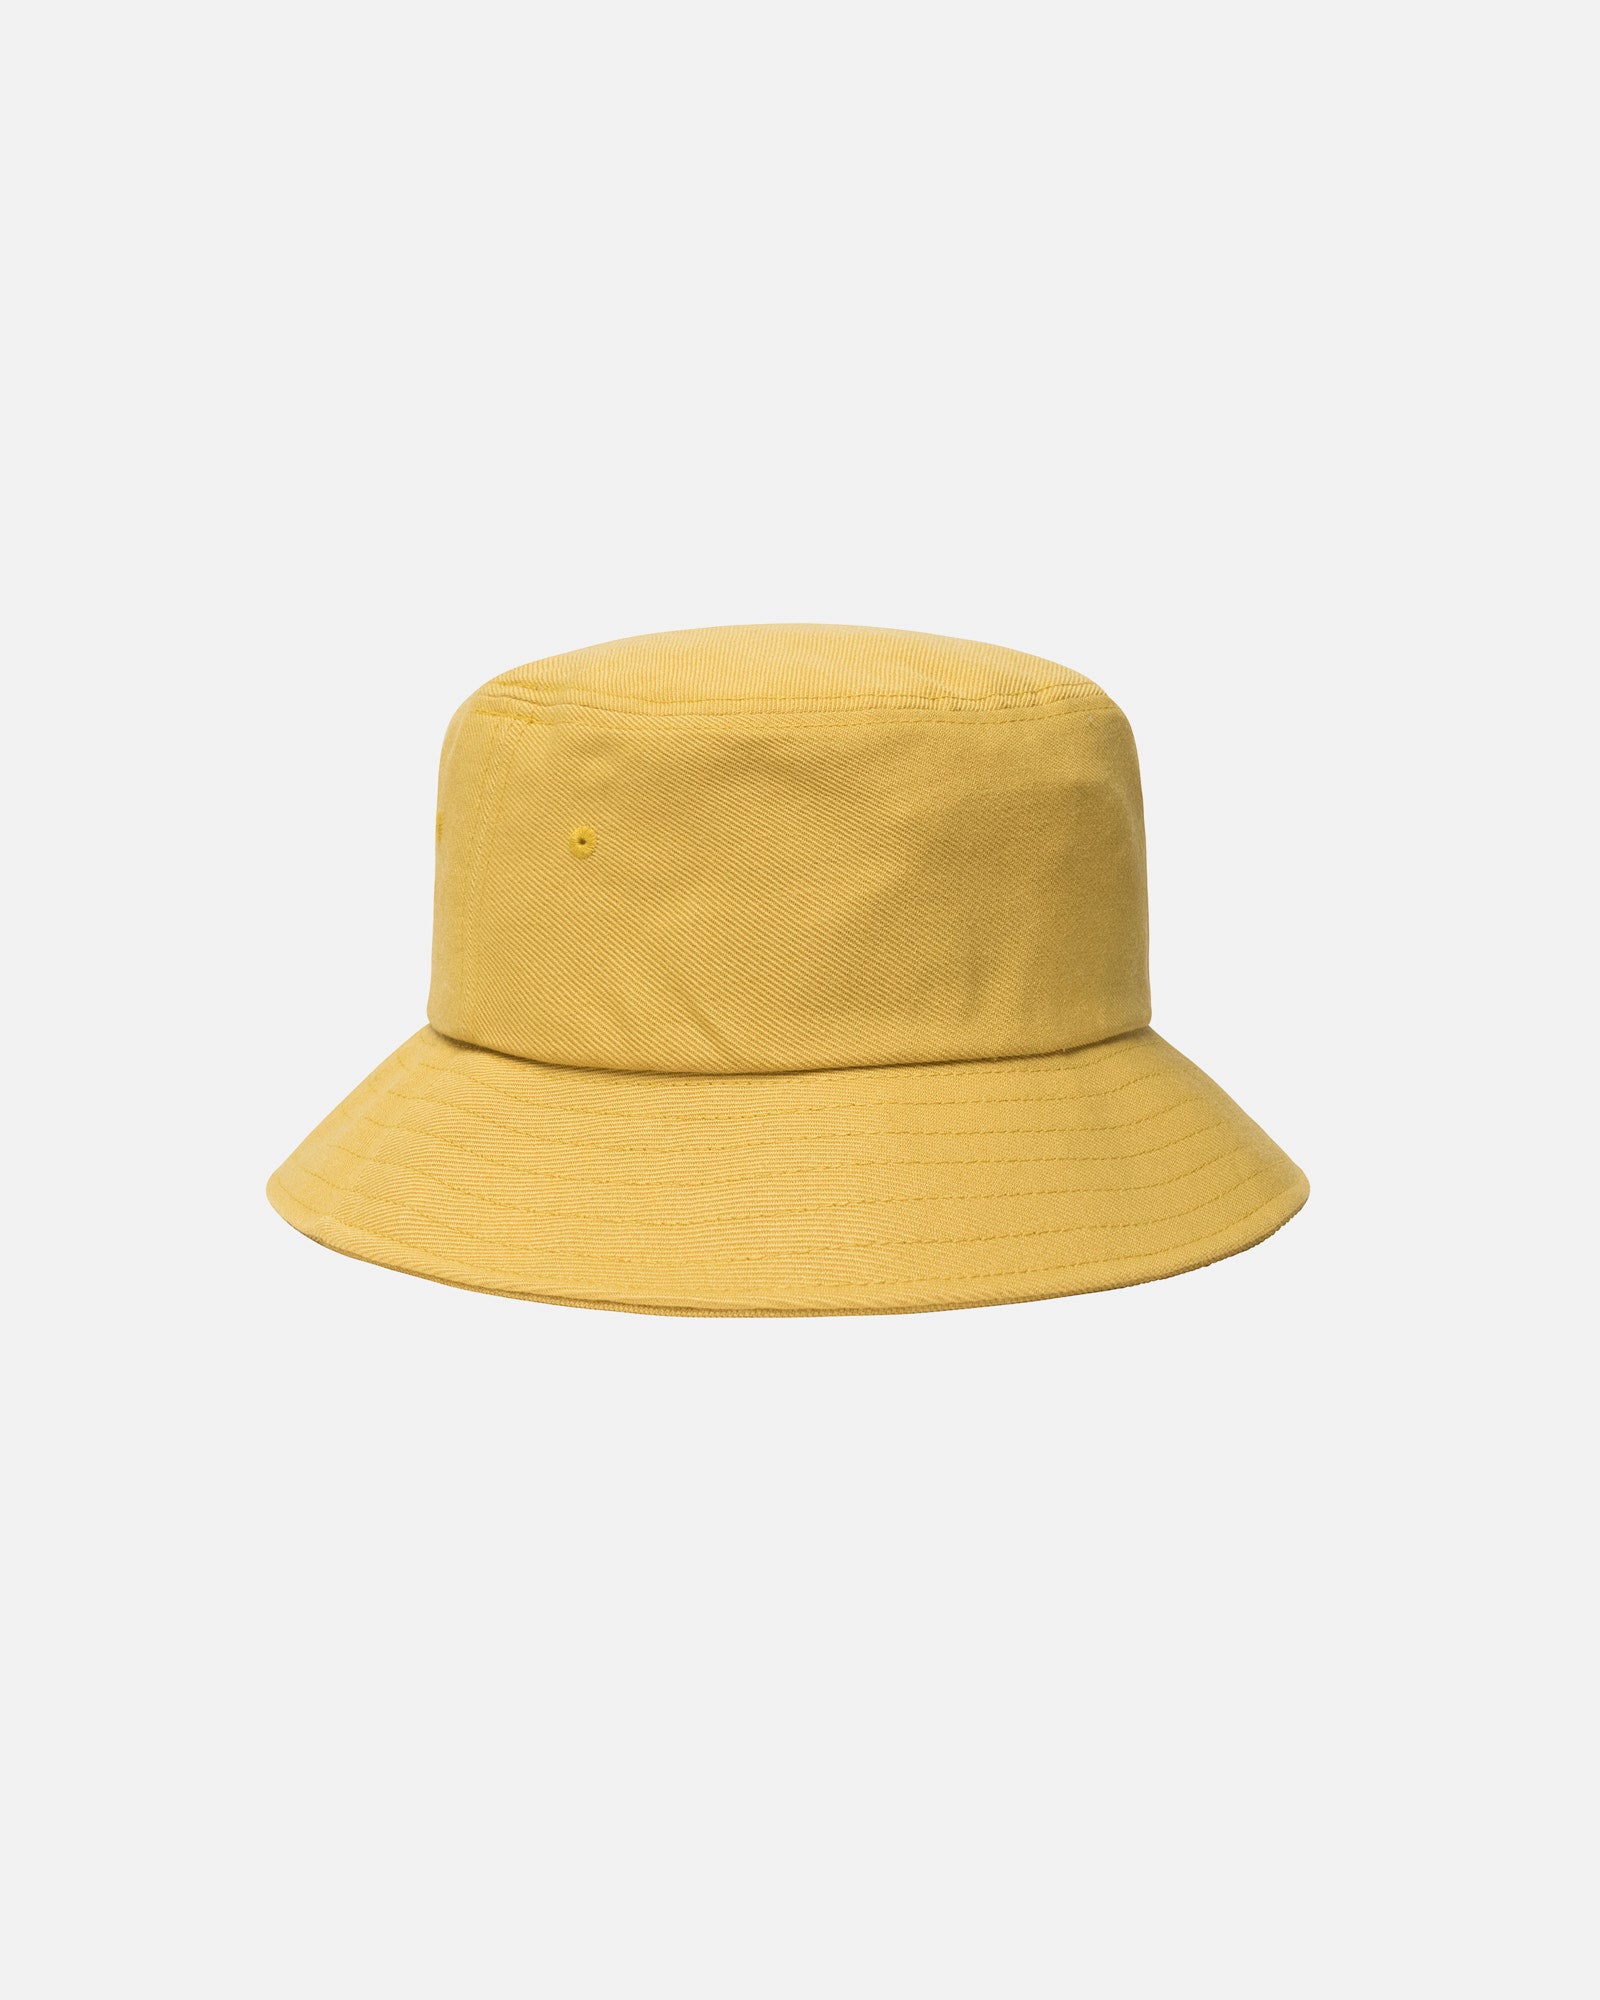 Big Stock Bucket Hat - Unisex Headwear | Stüssy